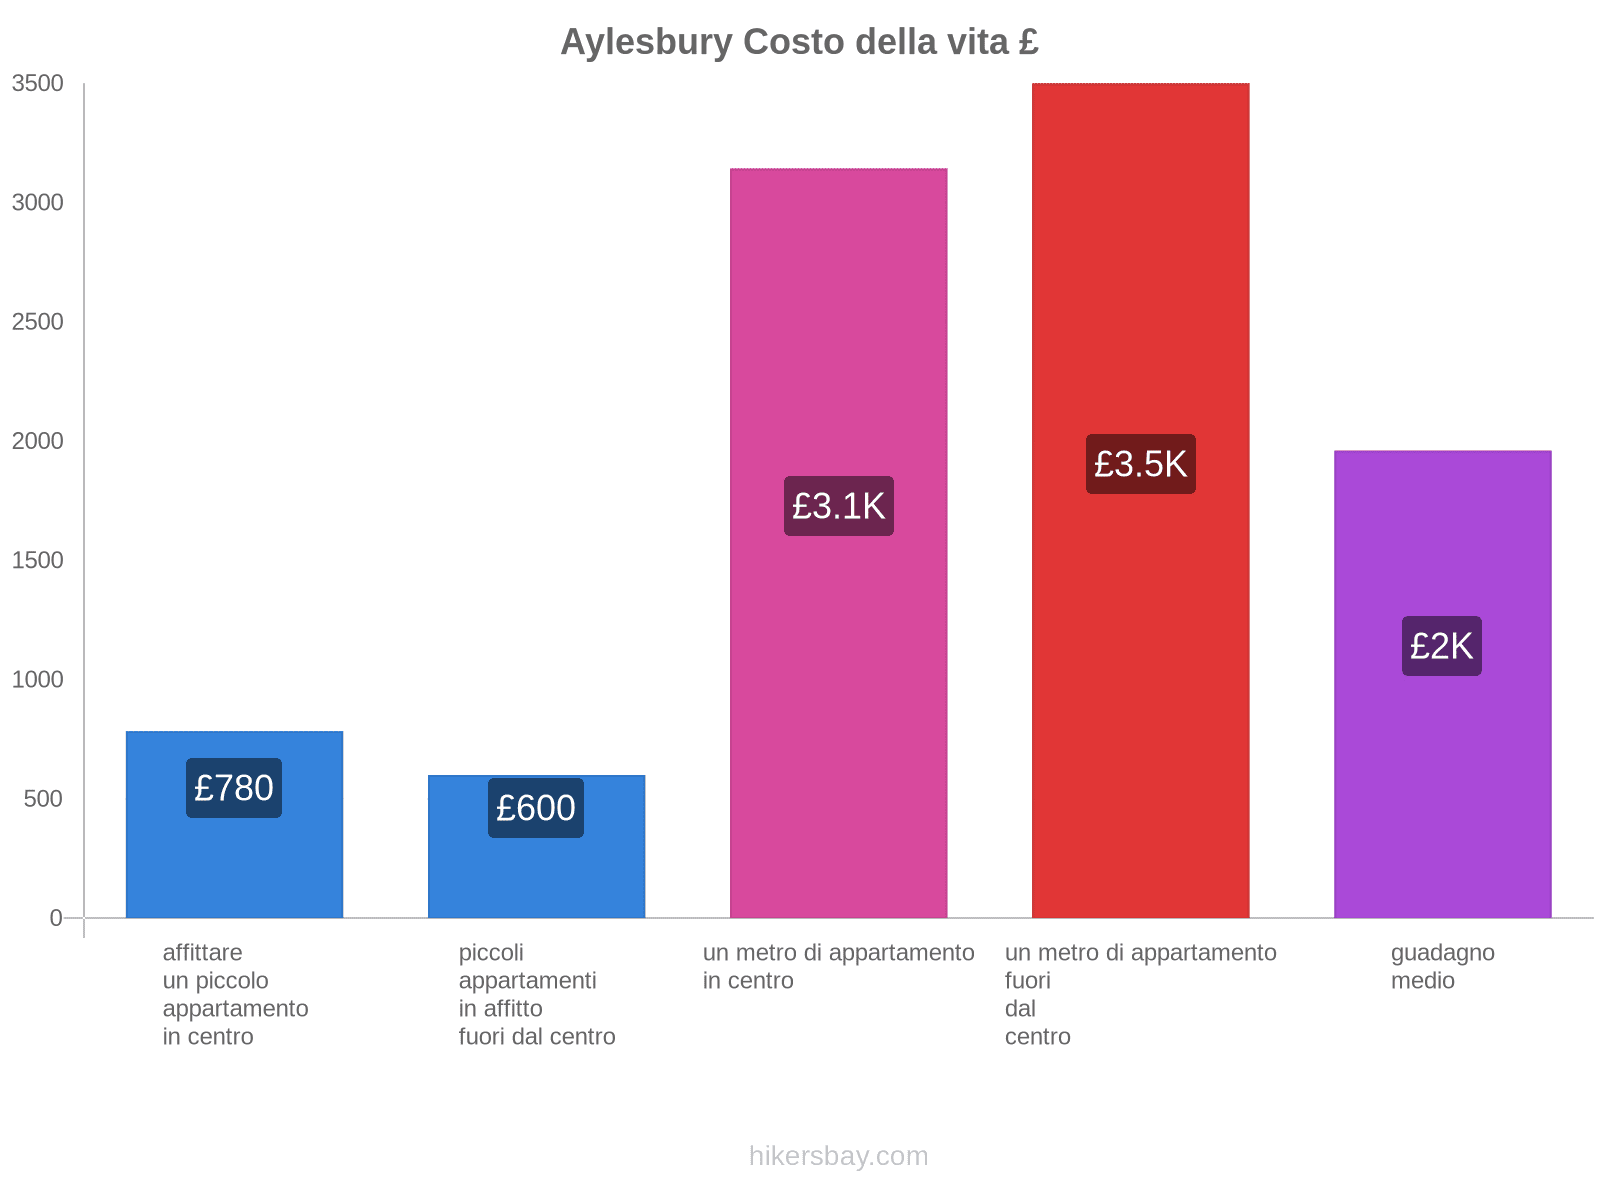 Aylesbury costo della vita hikersbay.com